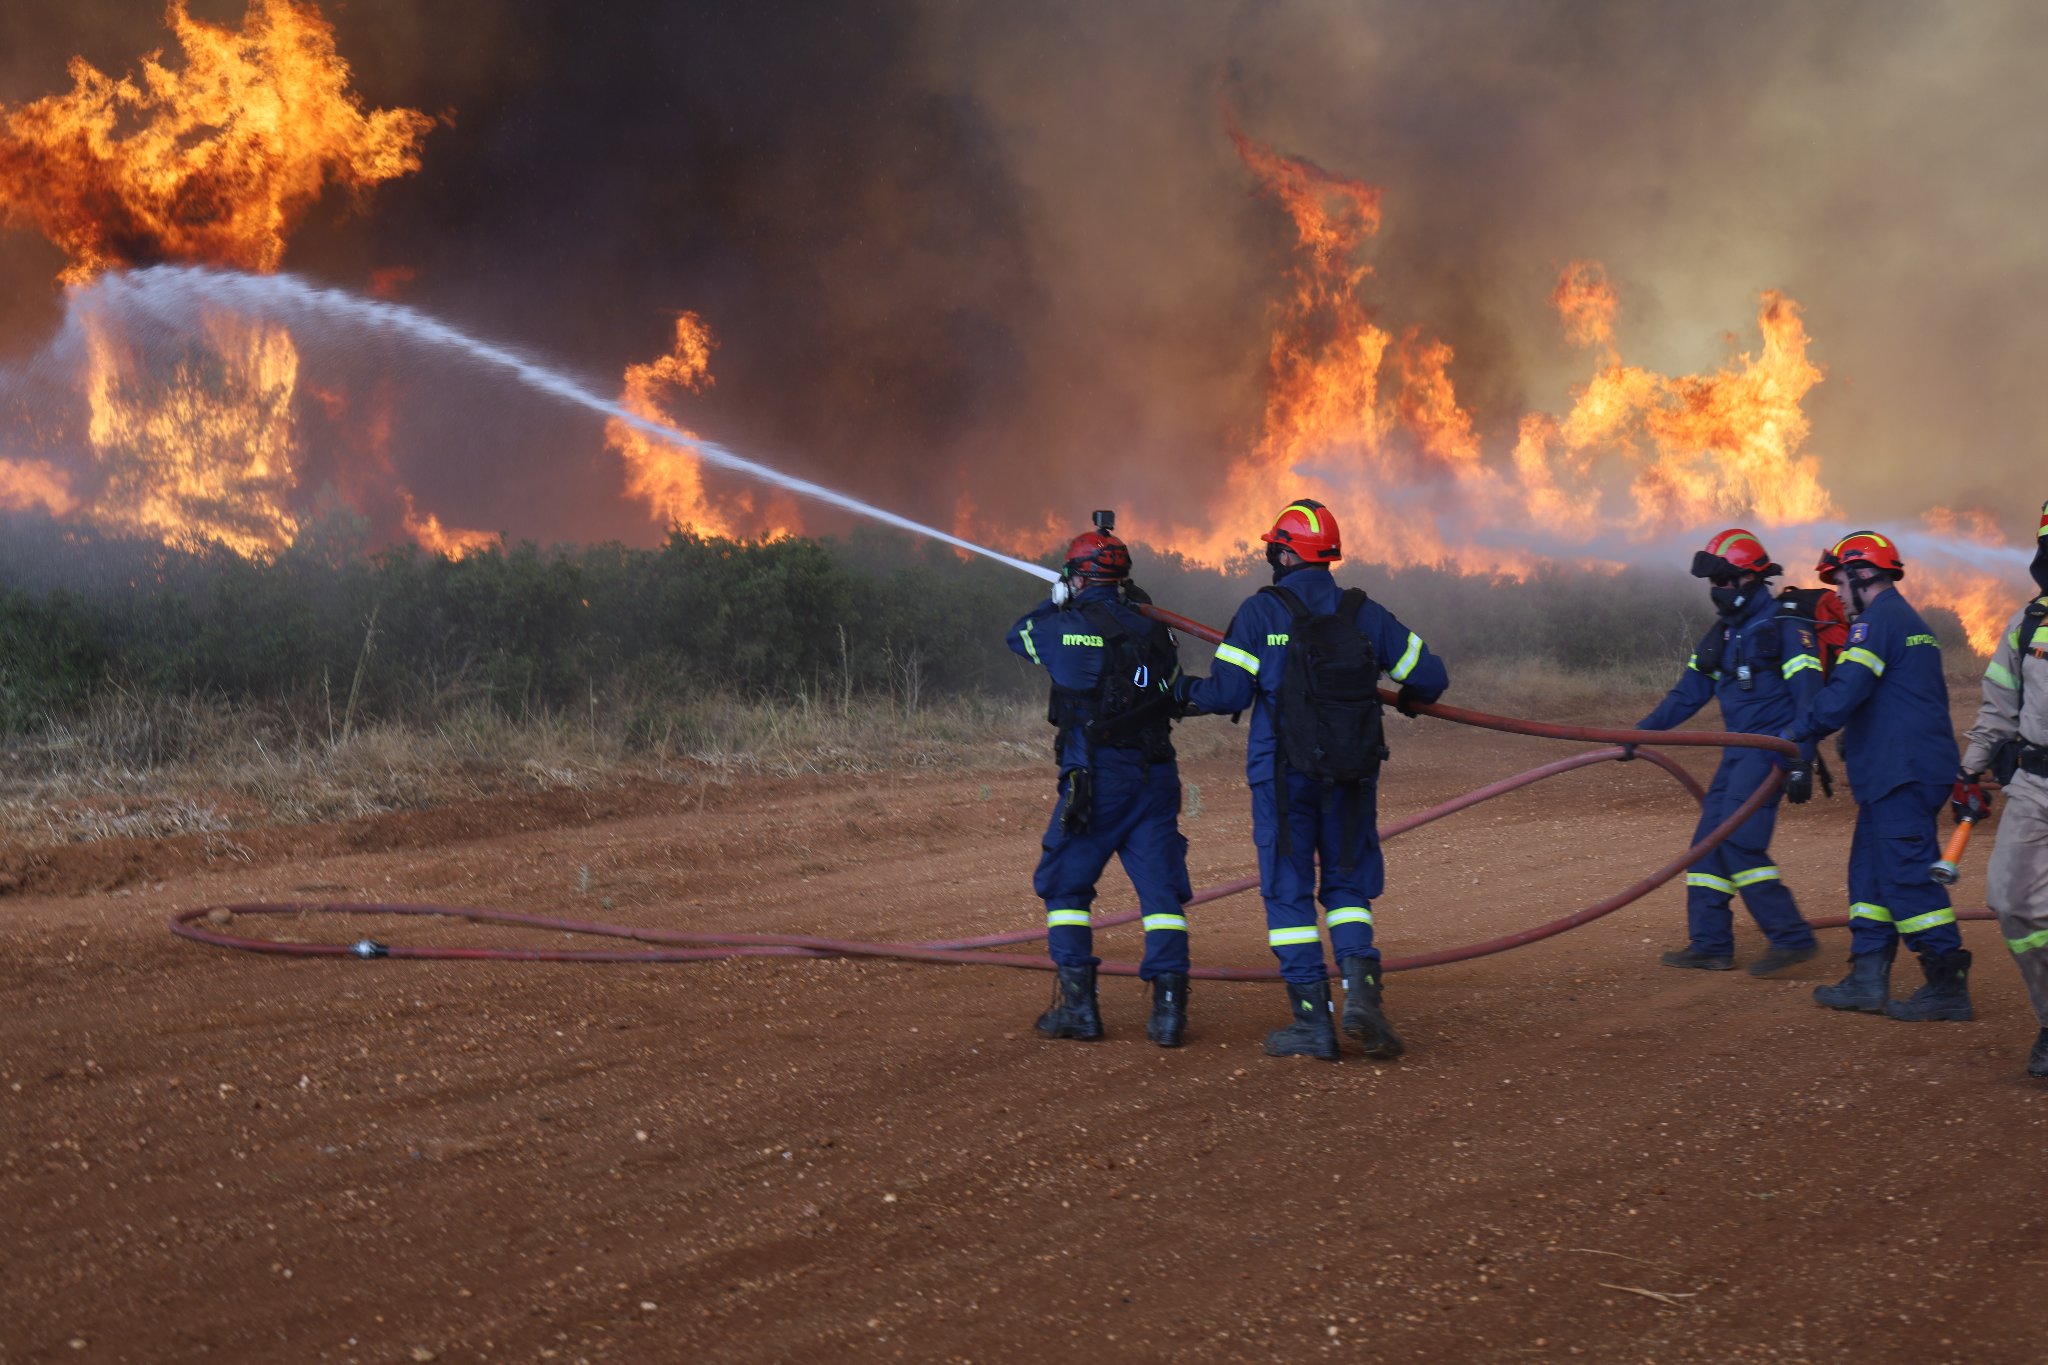 Πυρκαγιά στο Λουτράκι: Μέχρι πότε μπορείτε να υποβάλλετε αίτηση για πρώτη αρωγή για τους πυρόπληκτους